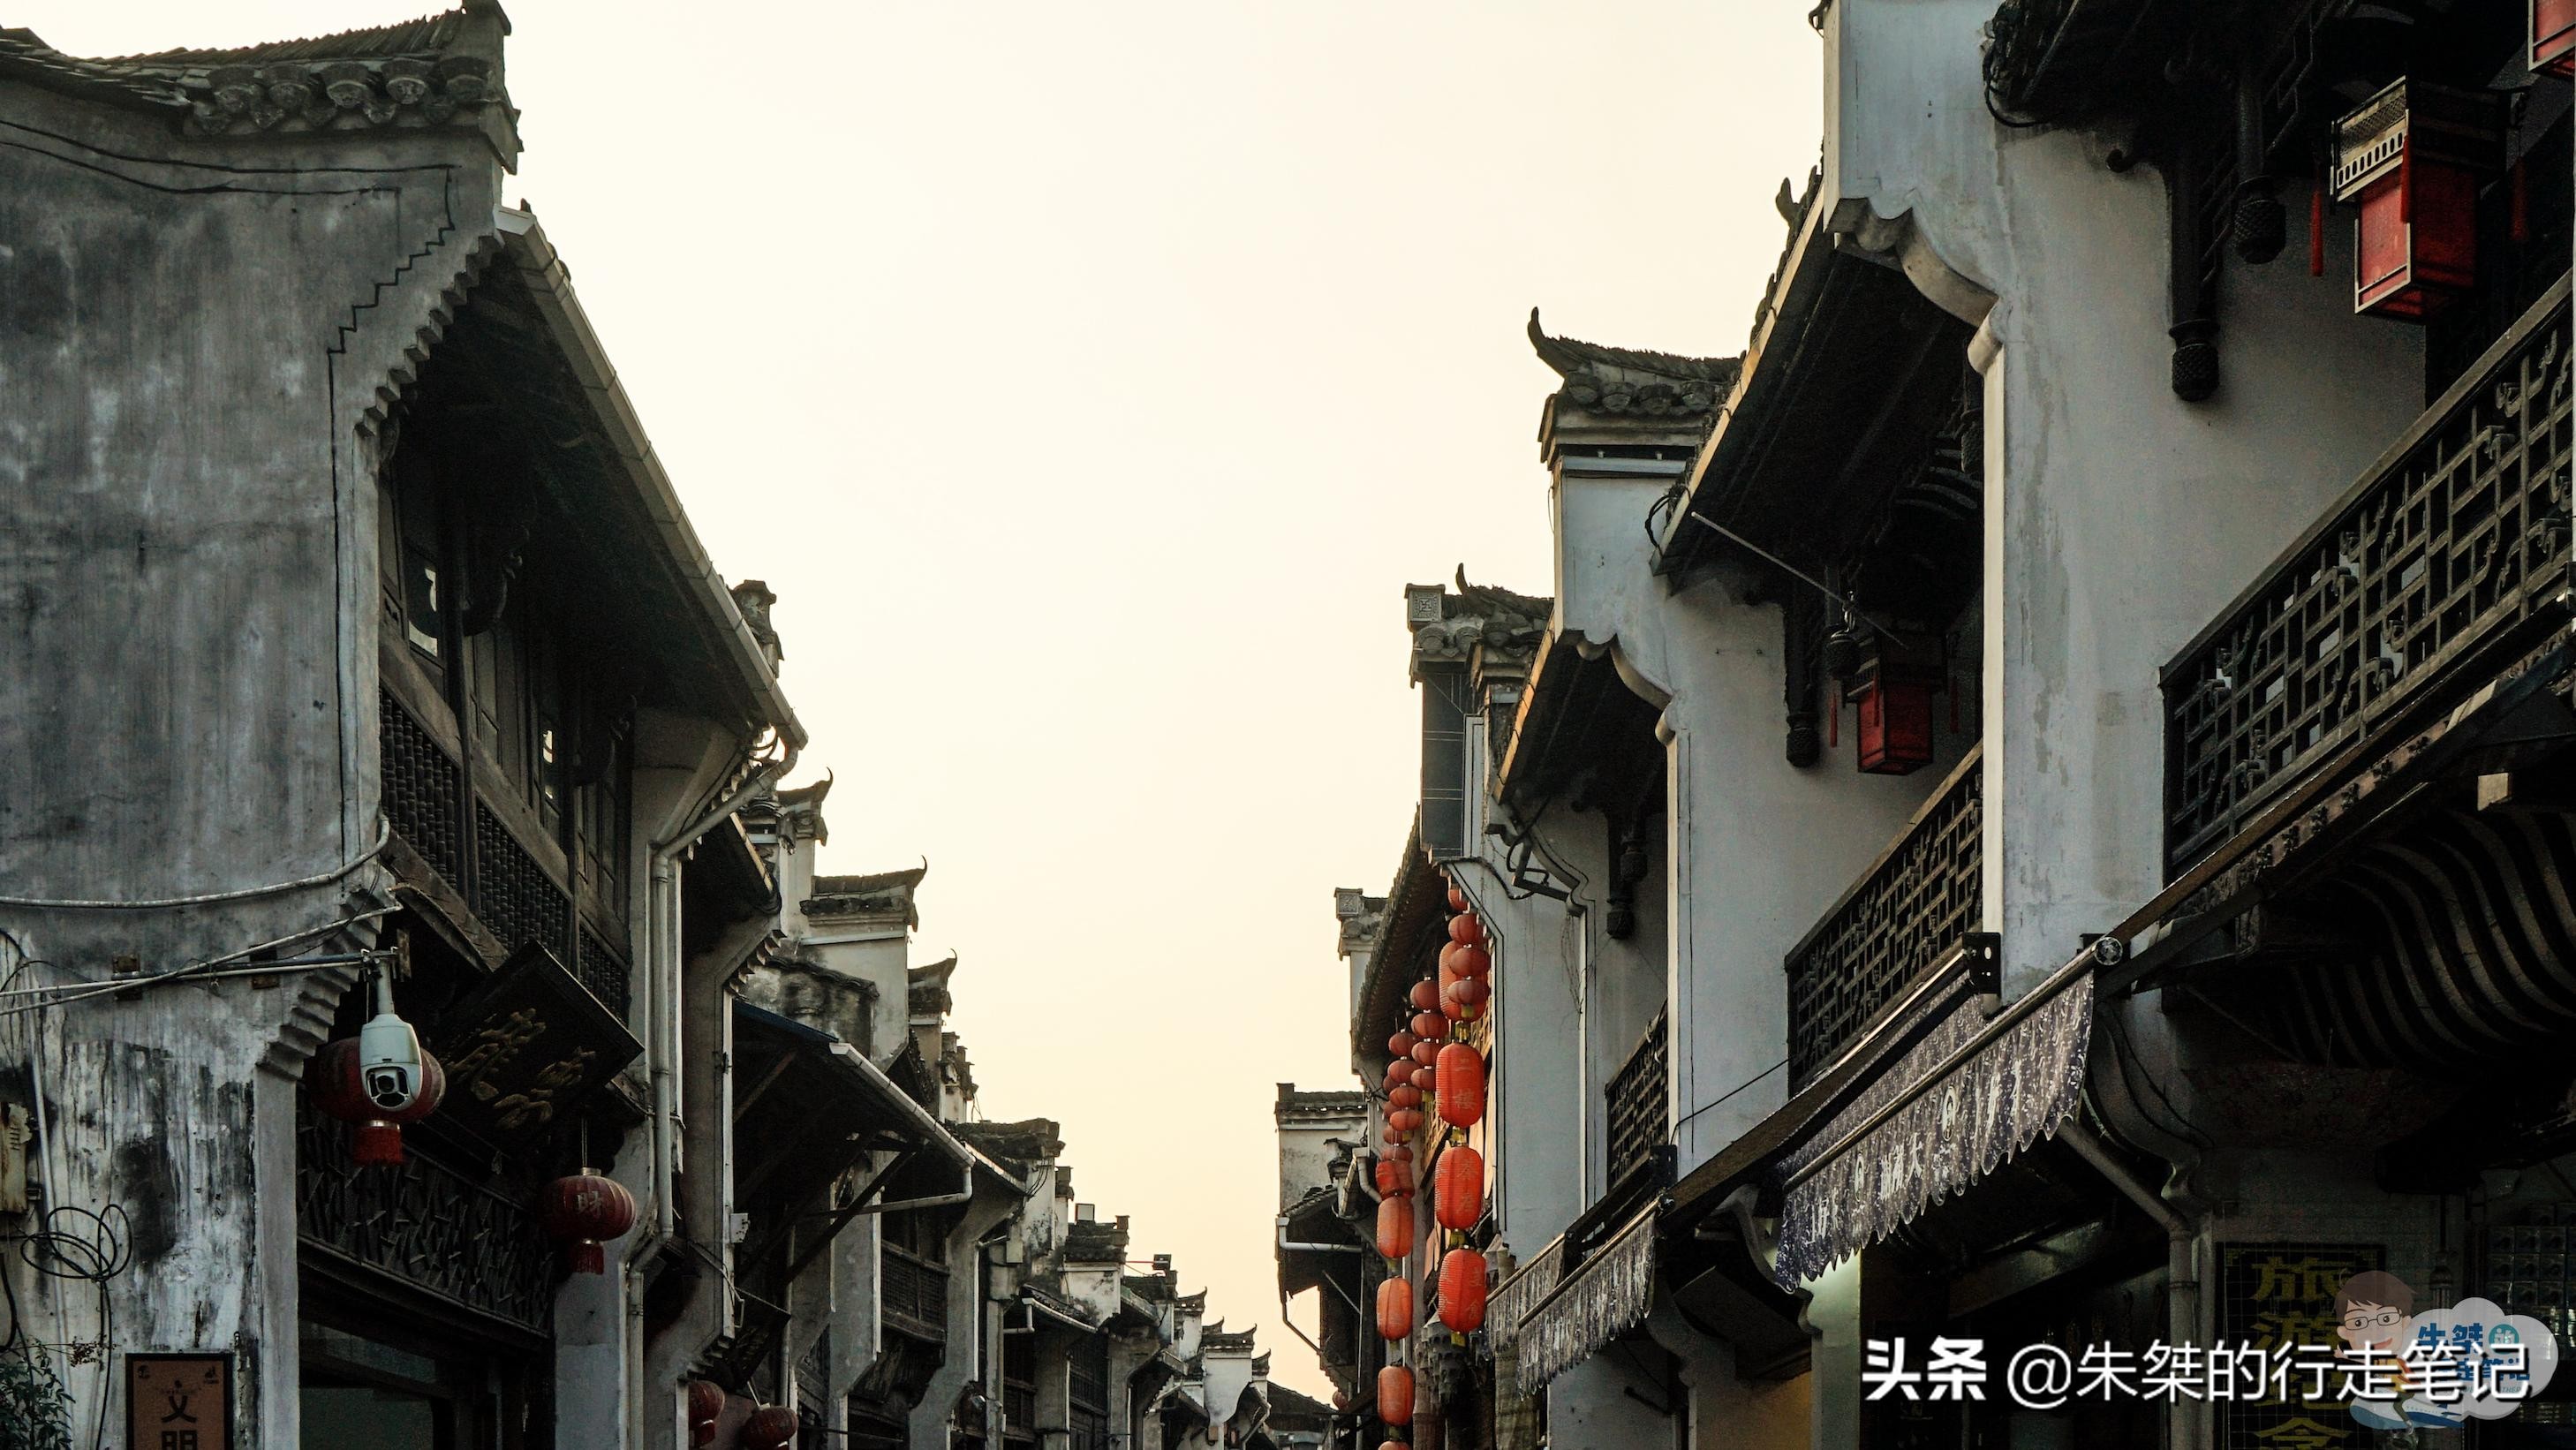 李荣浩 老街(李荣浩《老街》原型 有600多年历史 被誉为流动的“清明上河图”)